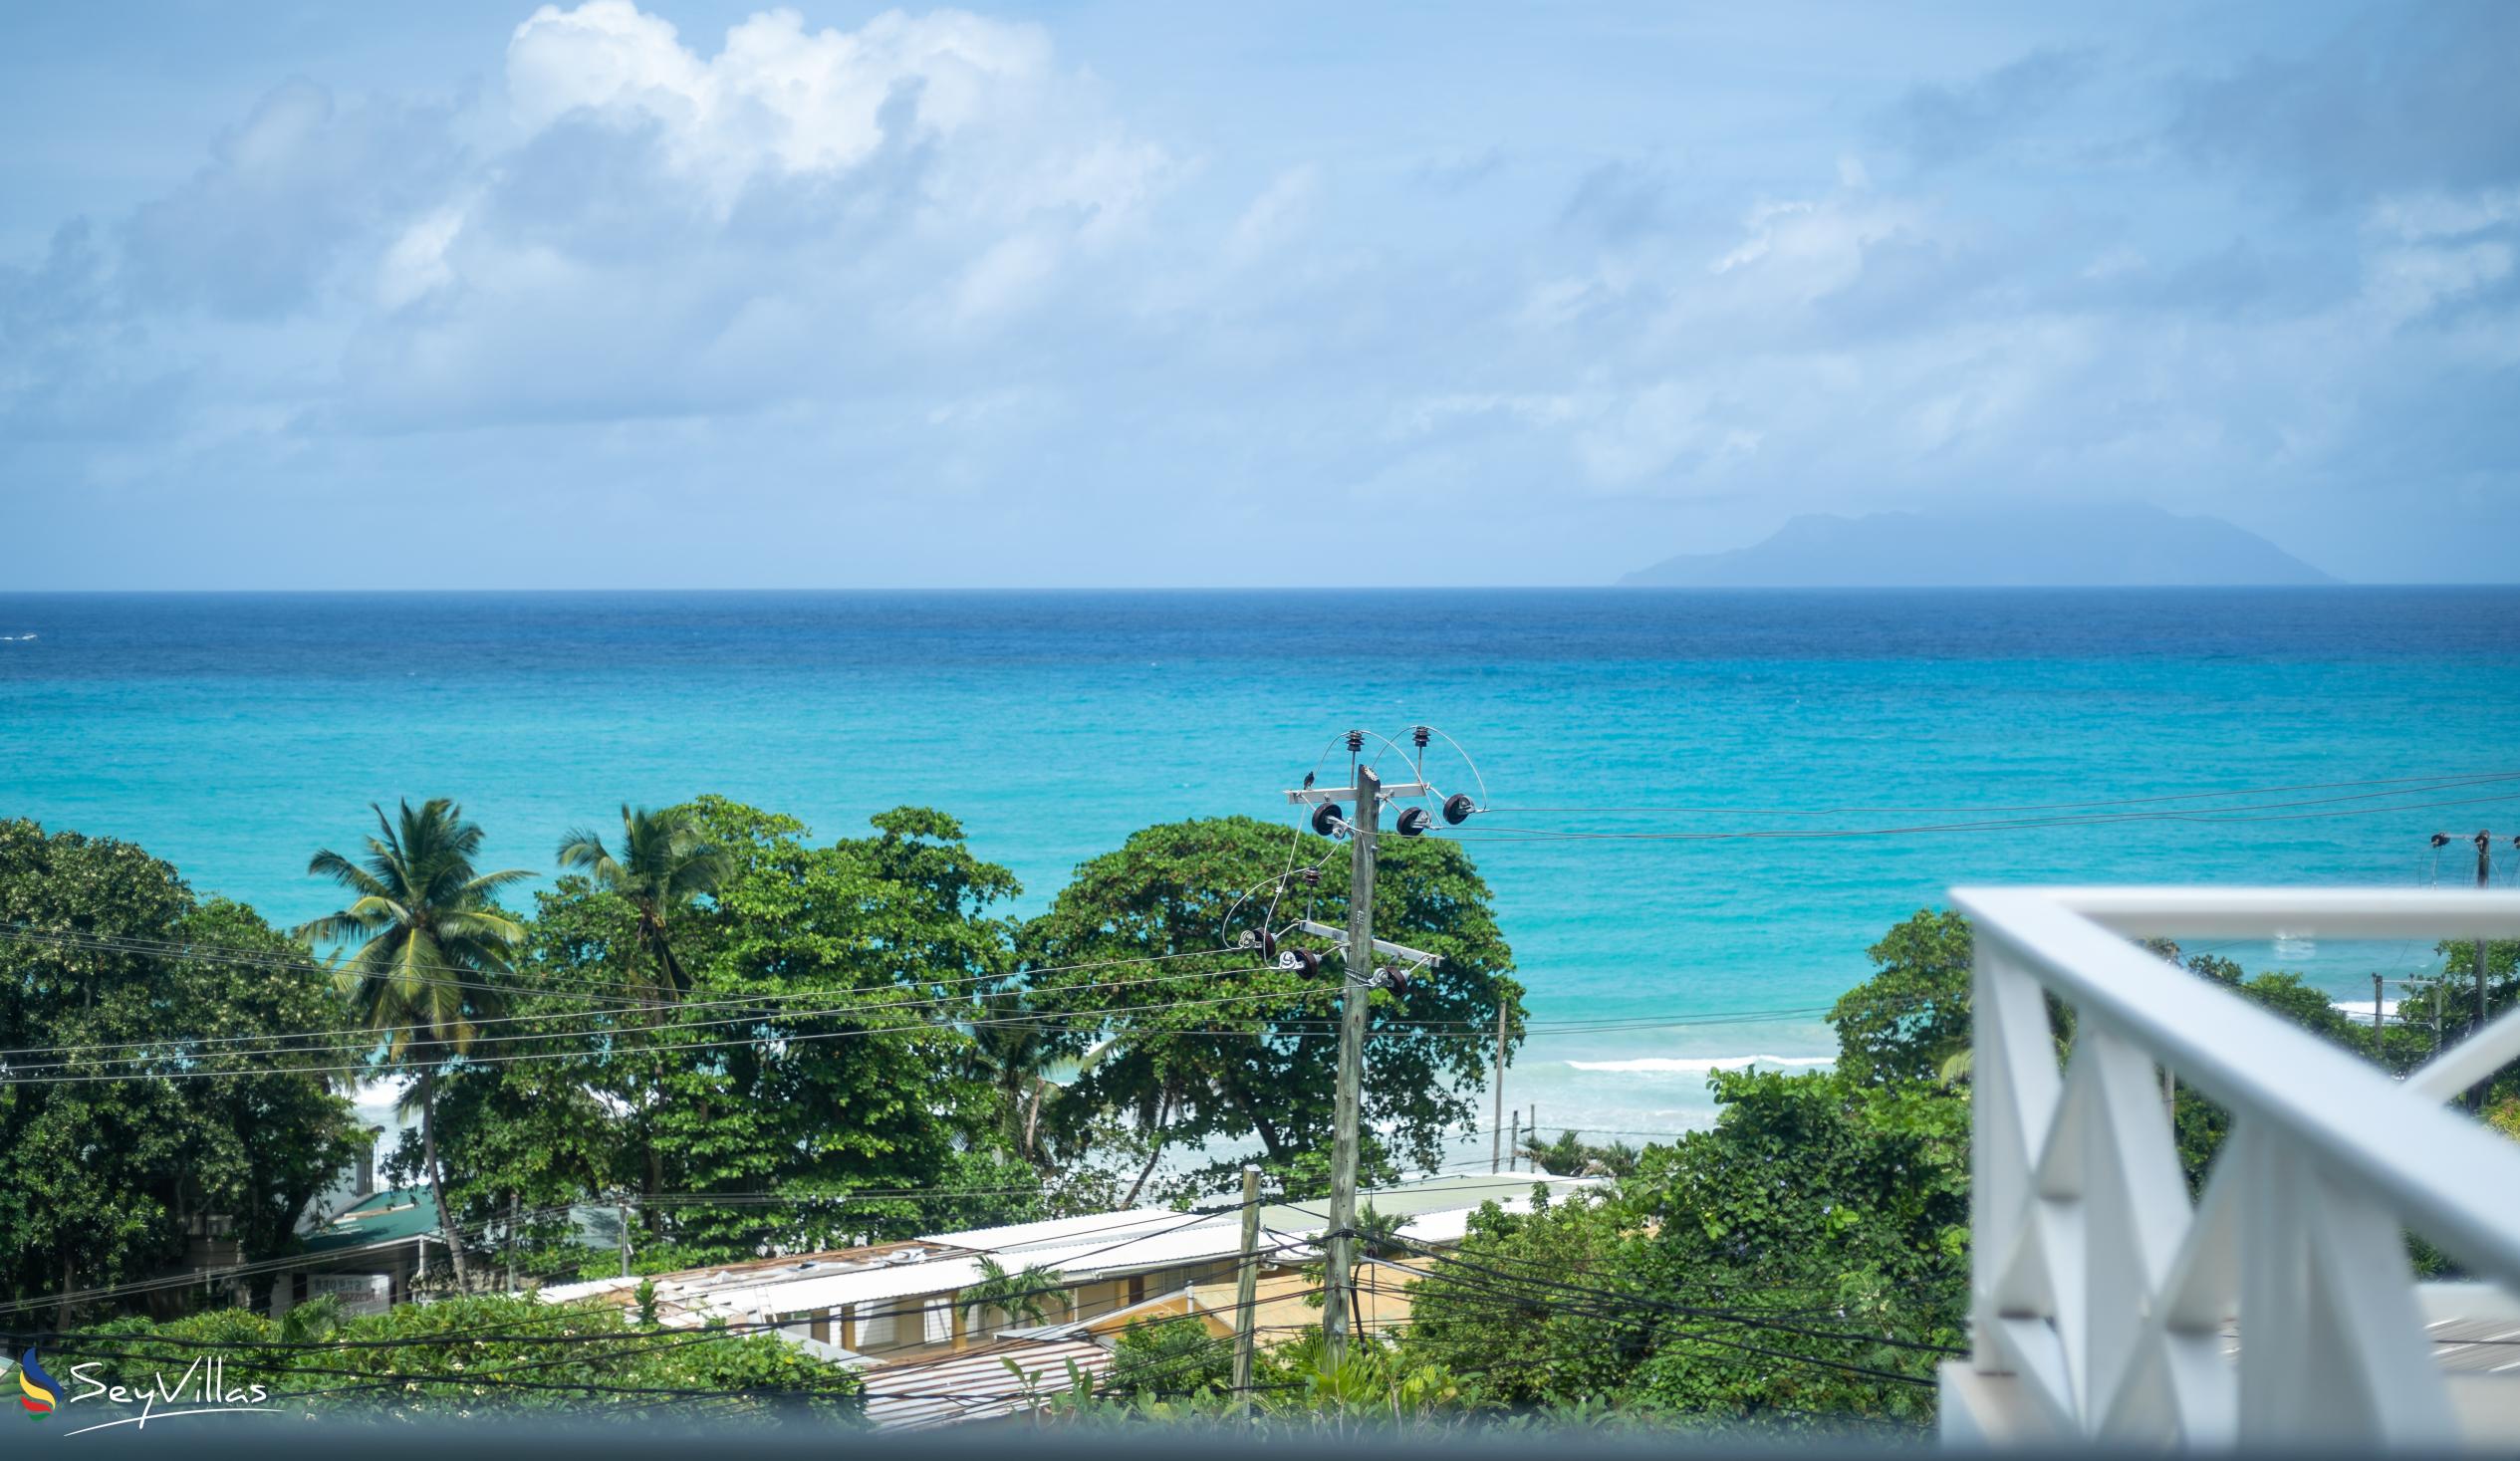 Foto 49: Villa Roscia - Chambre Vue sur Océan - Mahé (Seychelles)